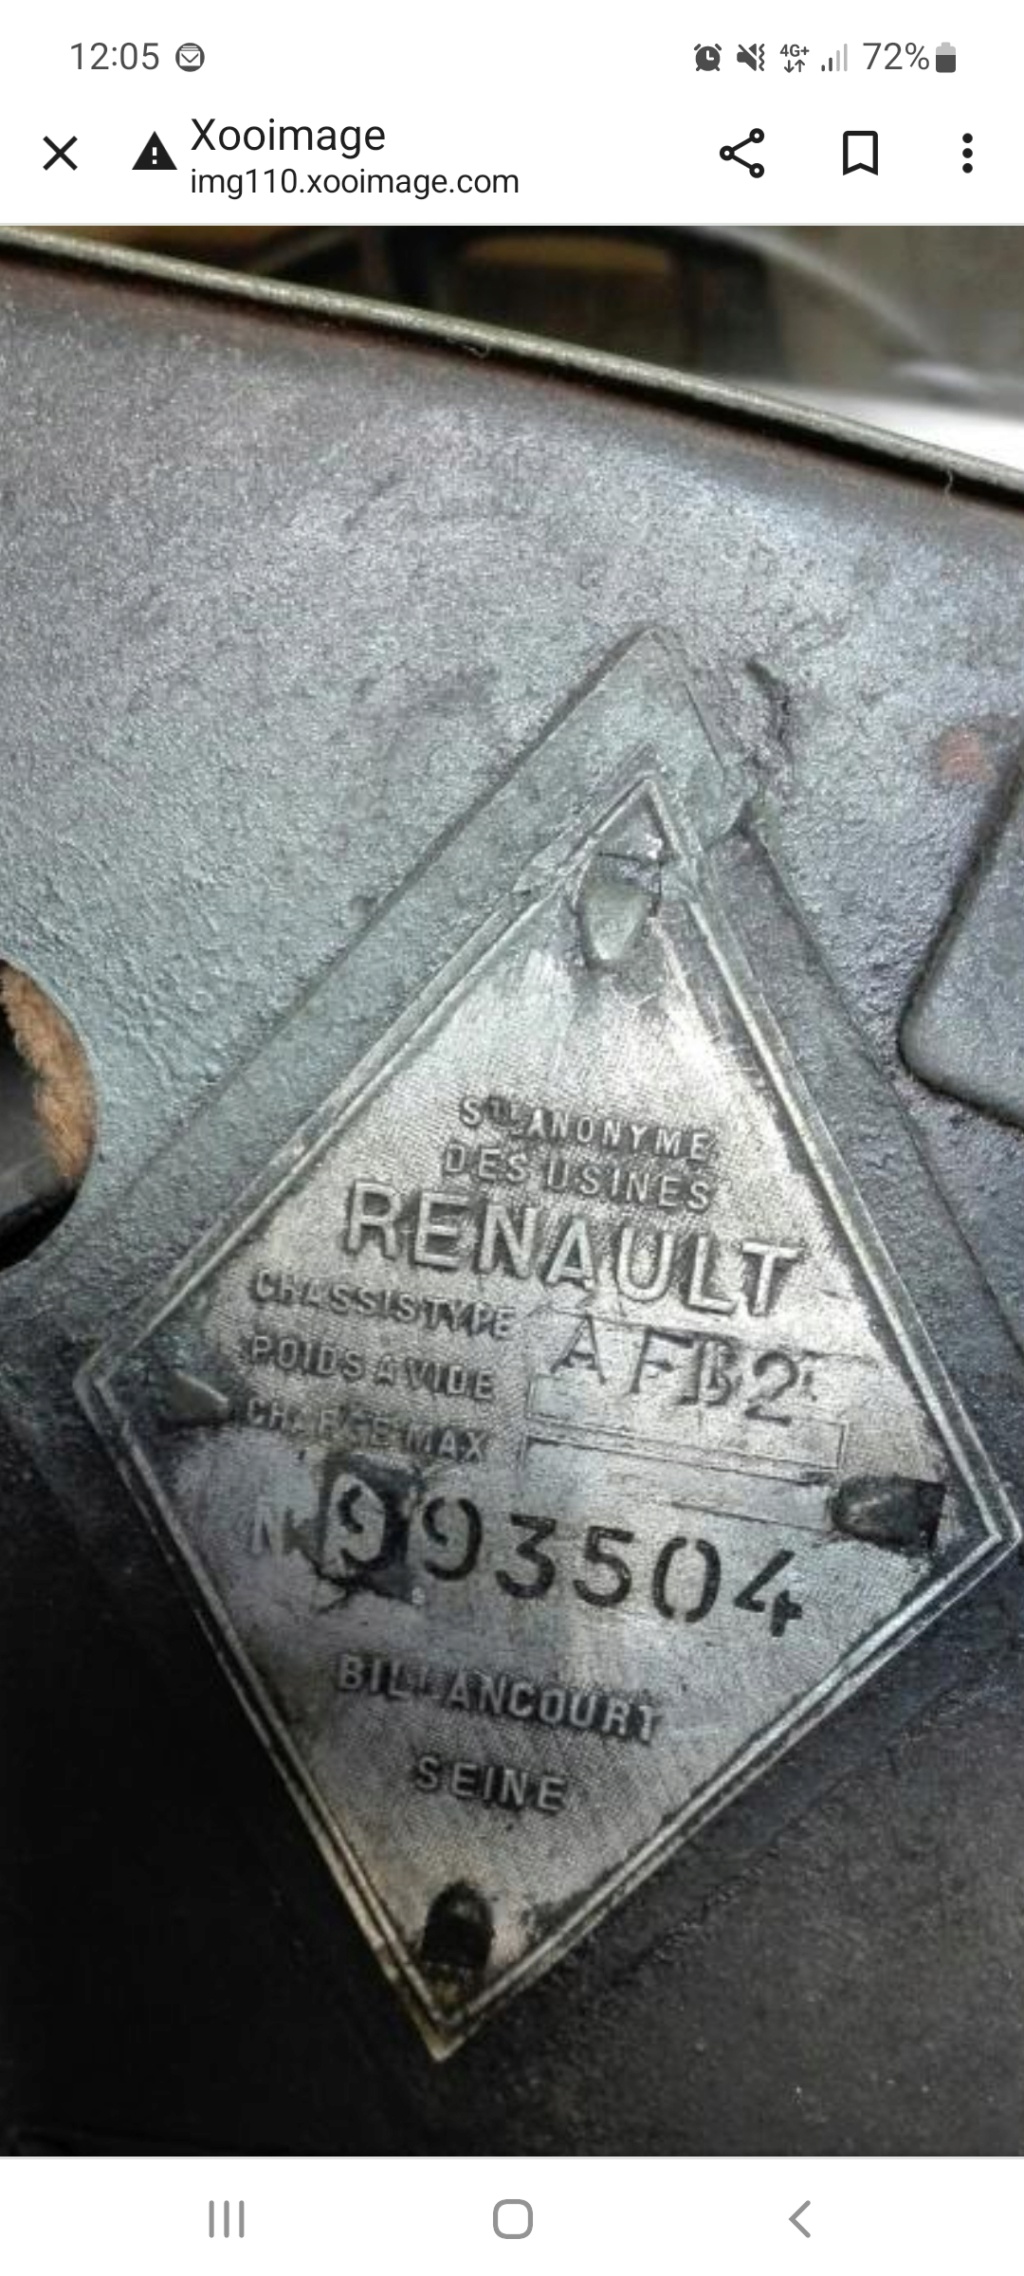 Renault AFB2 voiture sanitaire légère Screen15